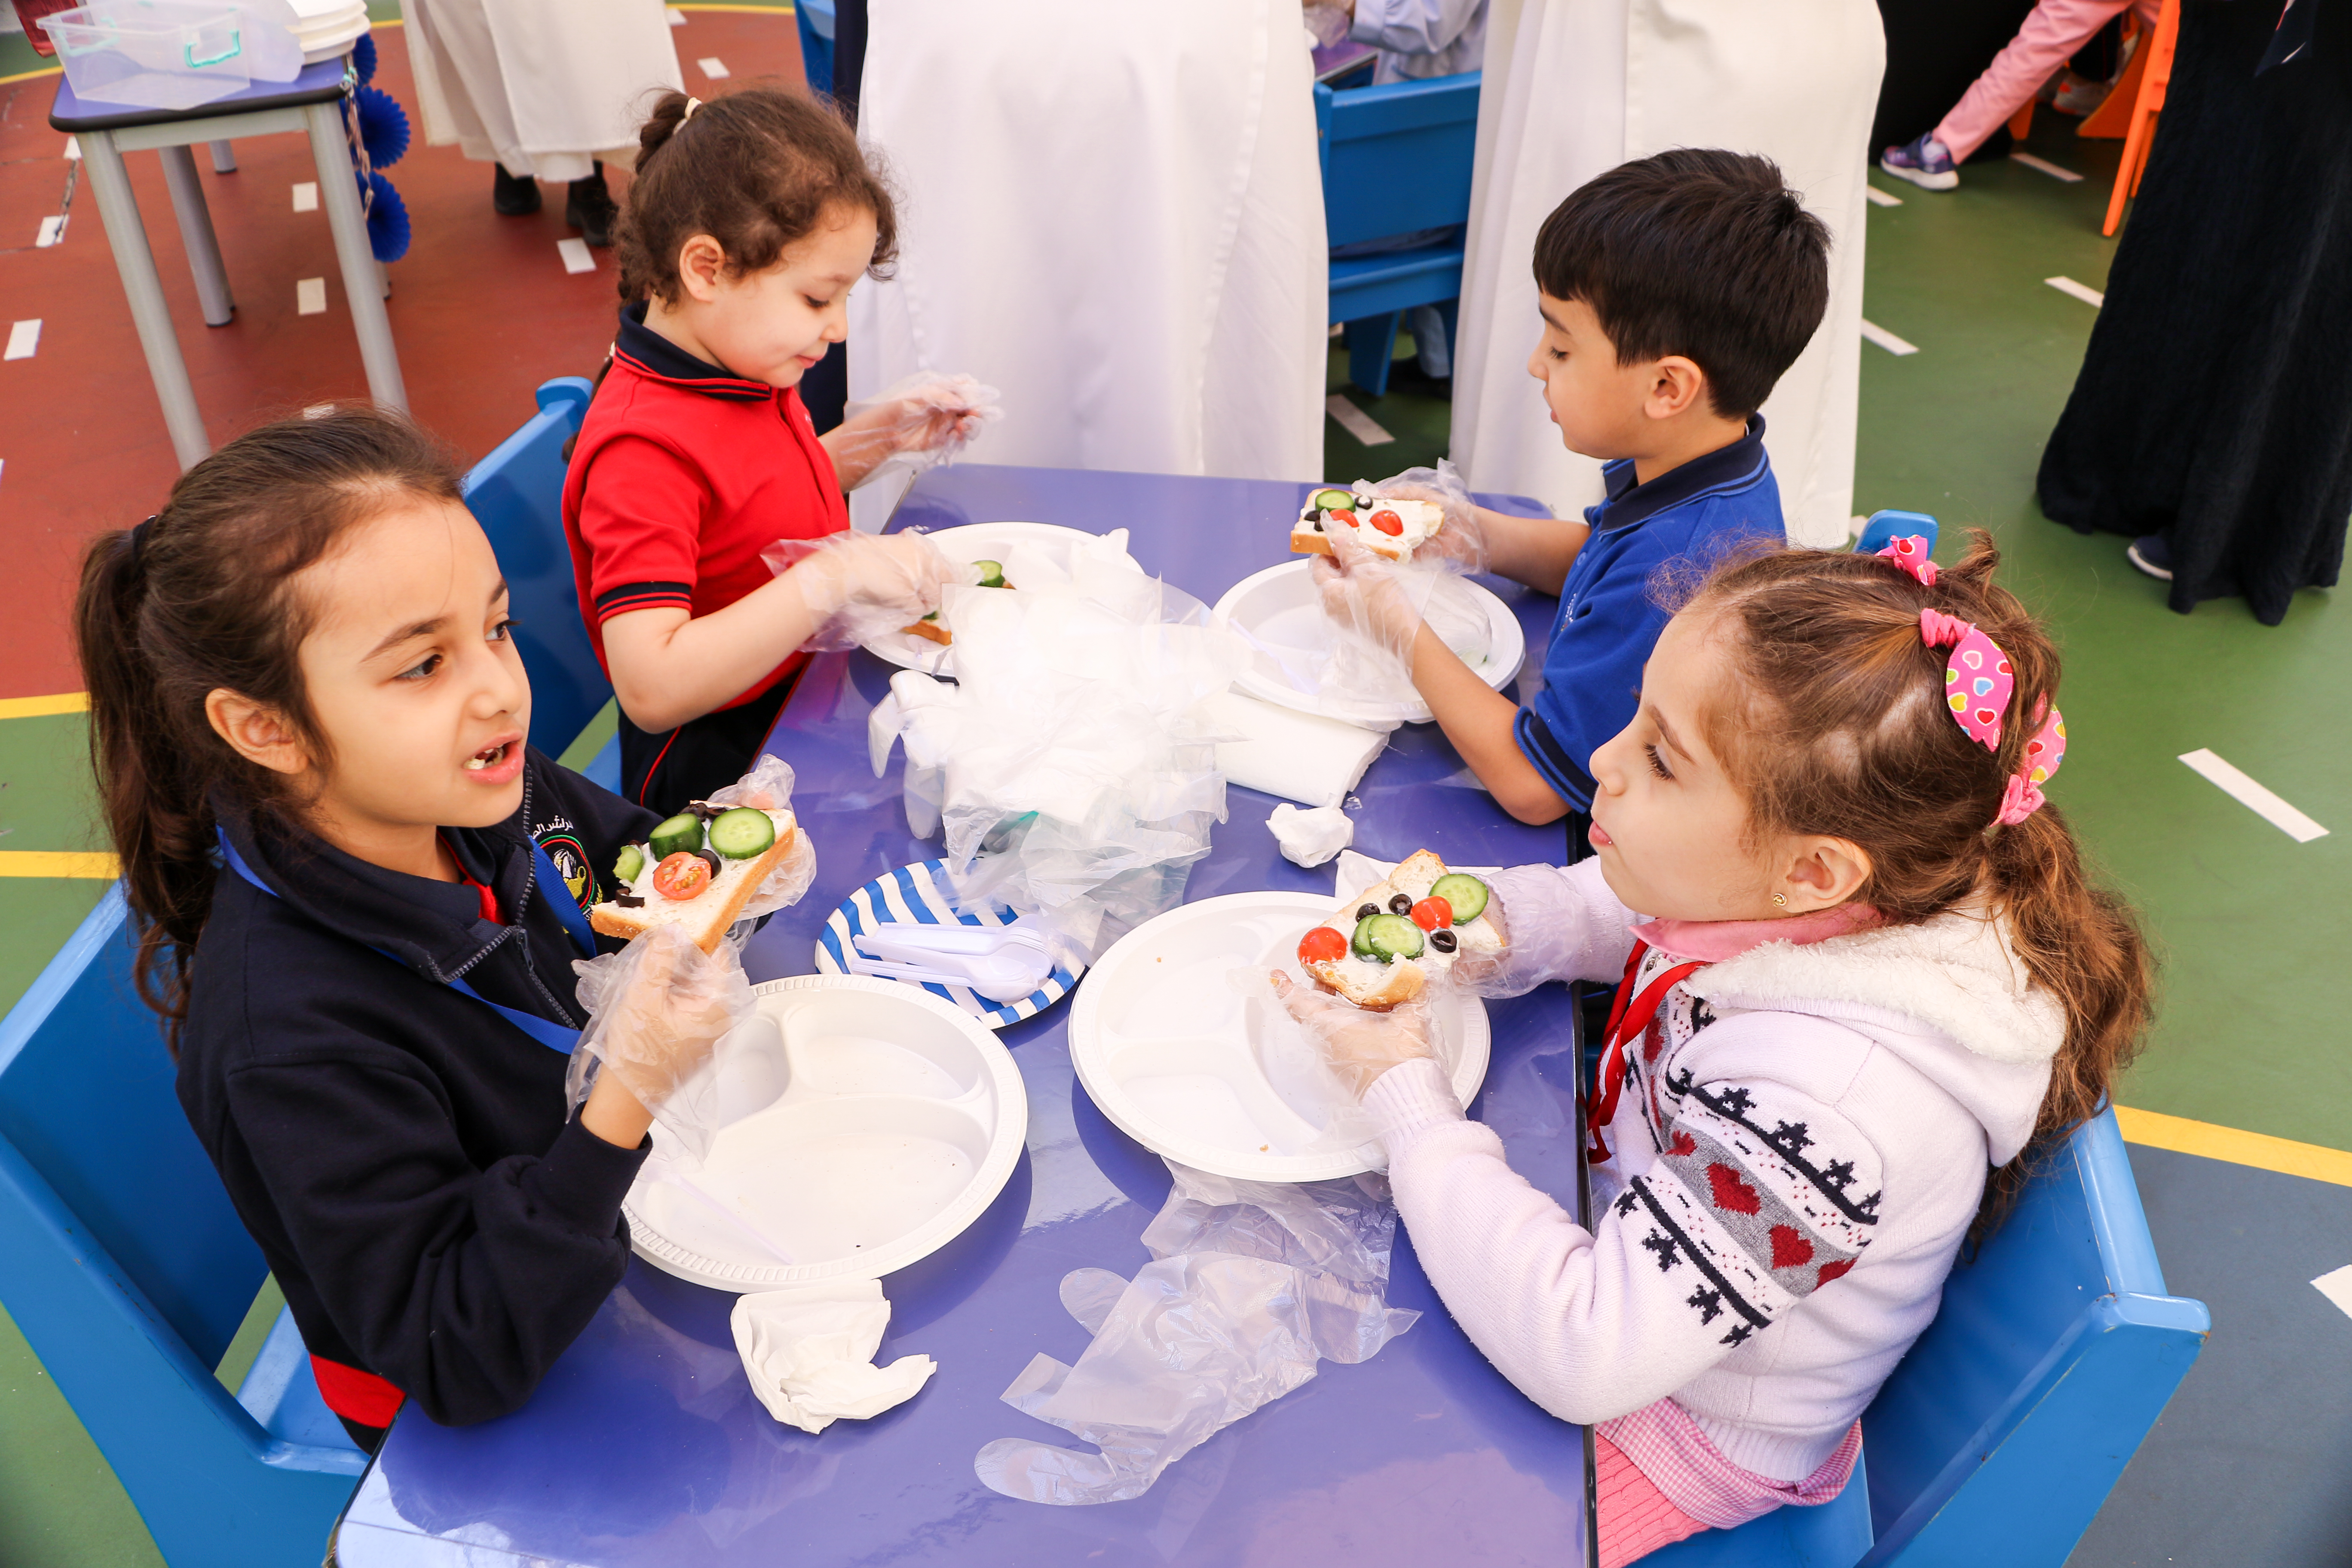 مهرجان الغذاء الصحي (healthy food festival) لأطفال الروضة الثانية